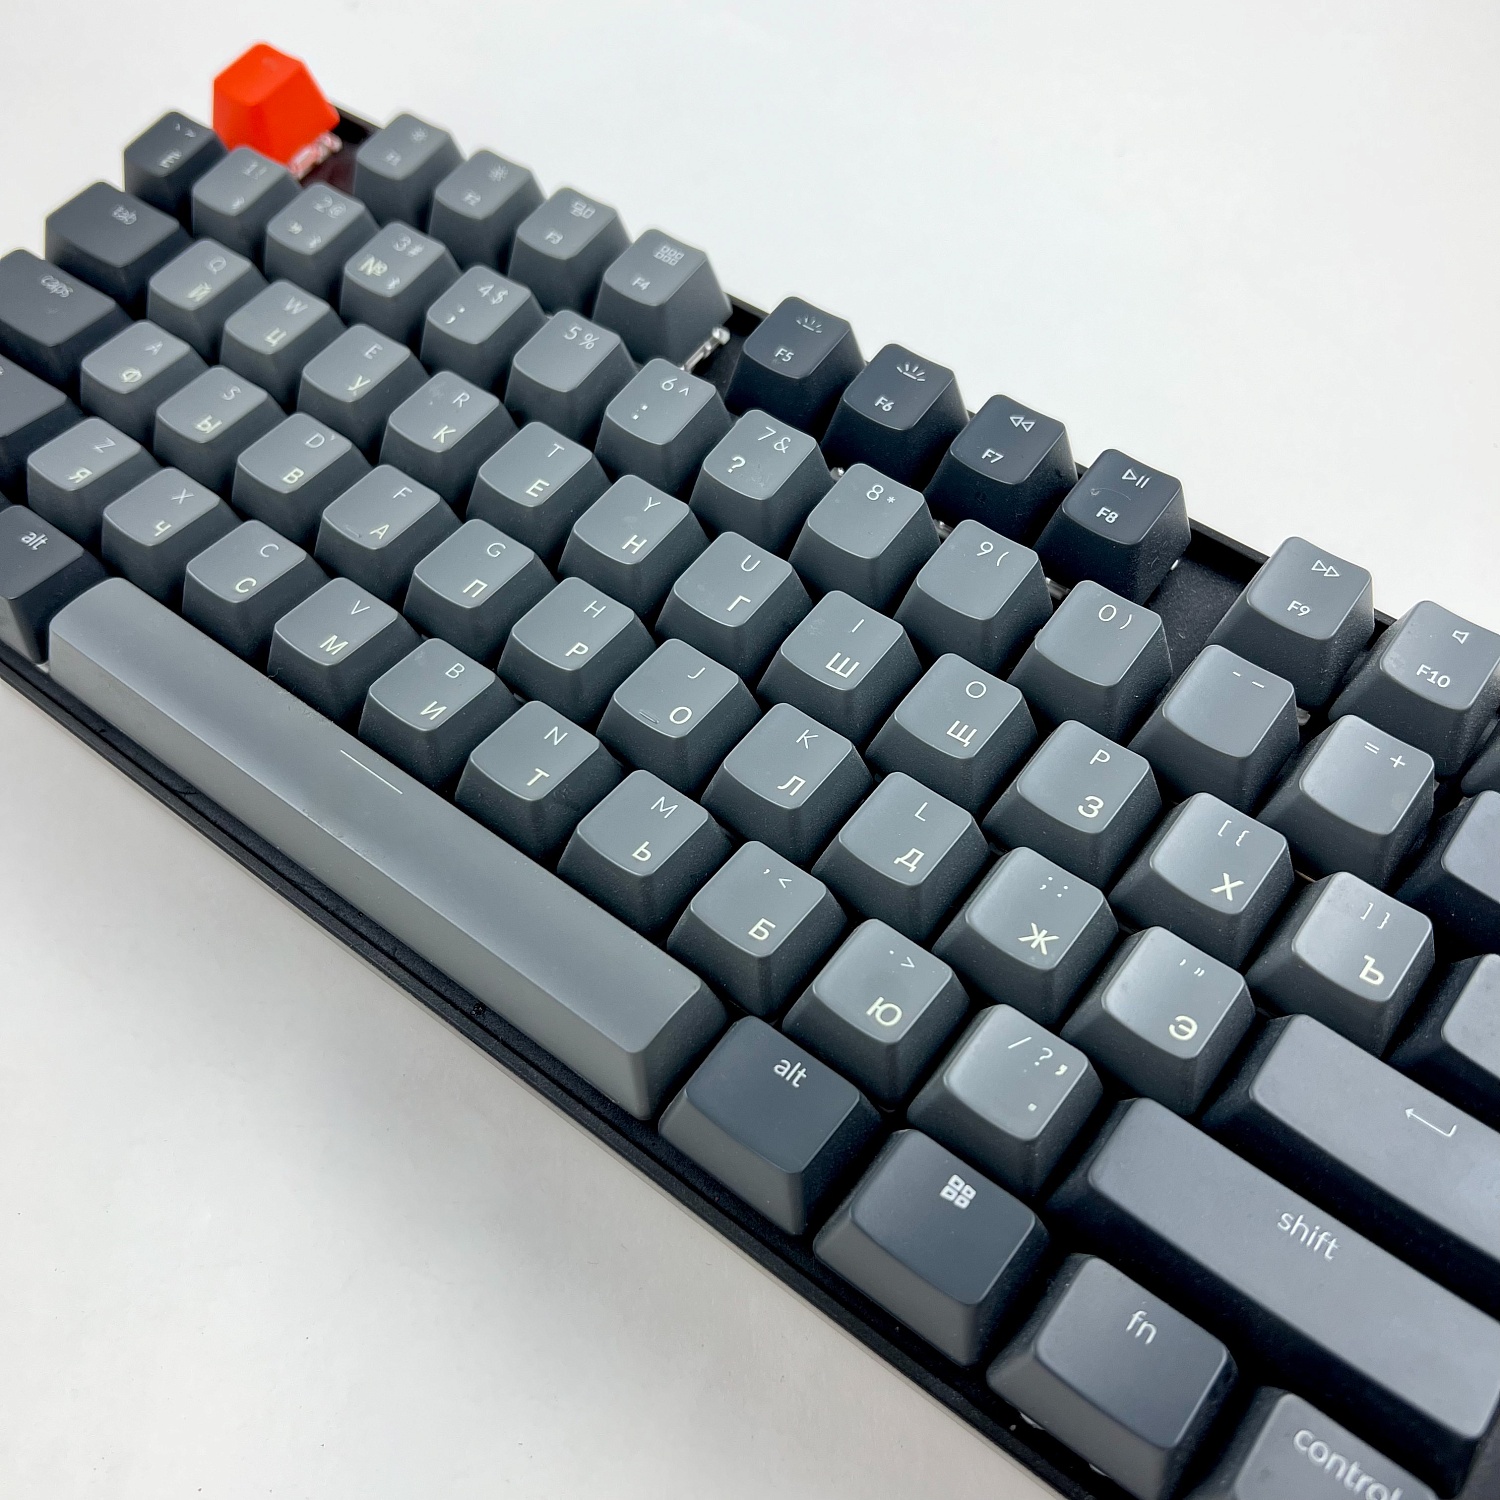 клавиатура redragon с гравировкой русских букв, сделано в Бастет Лазер